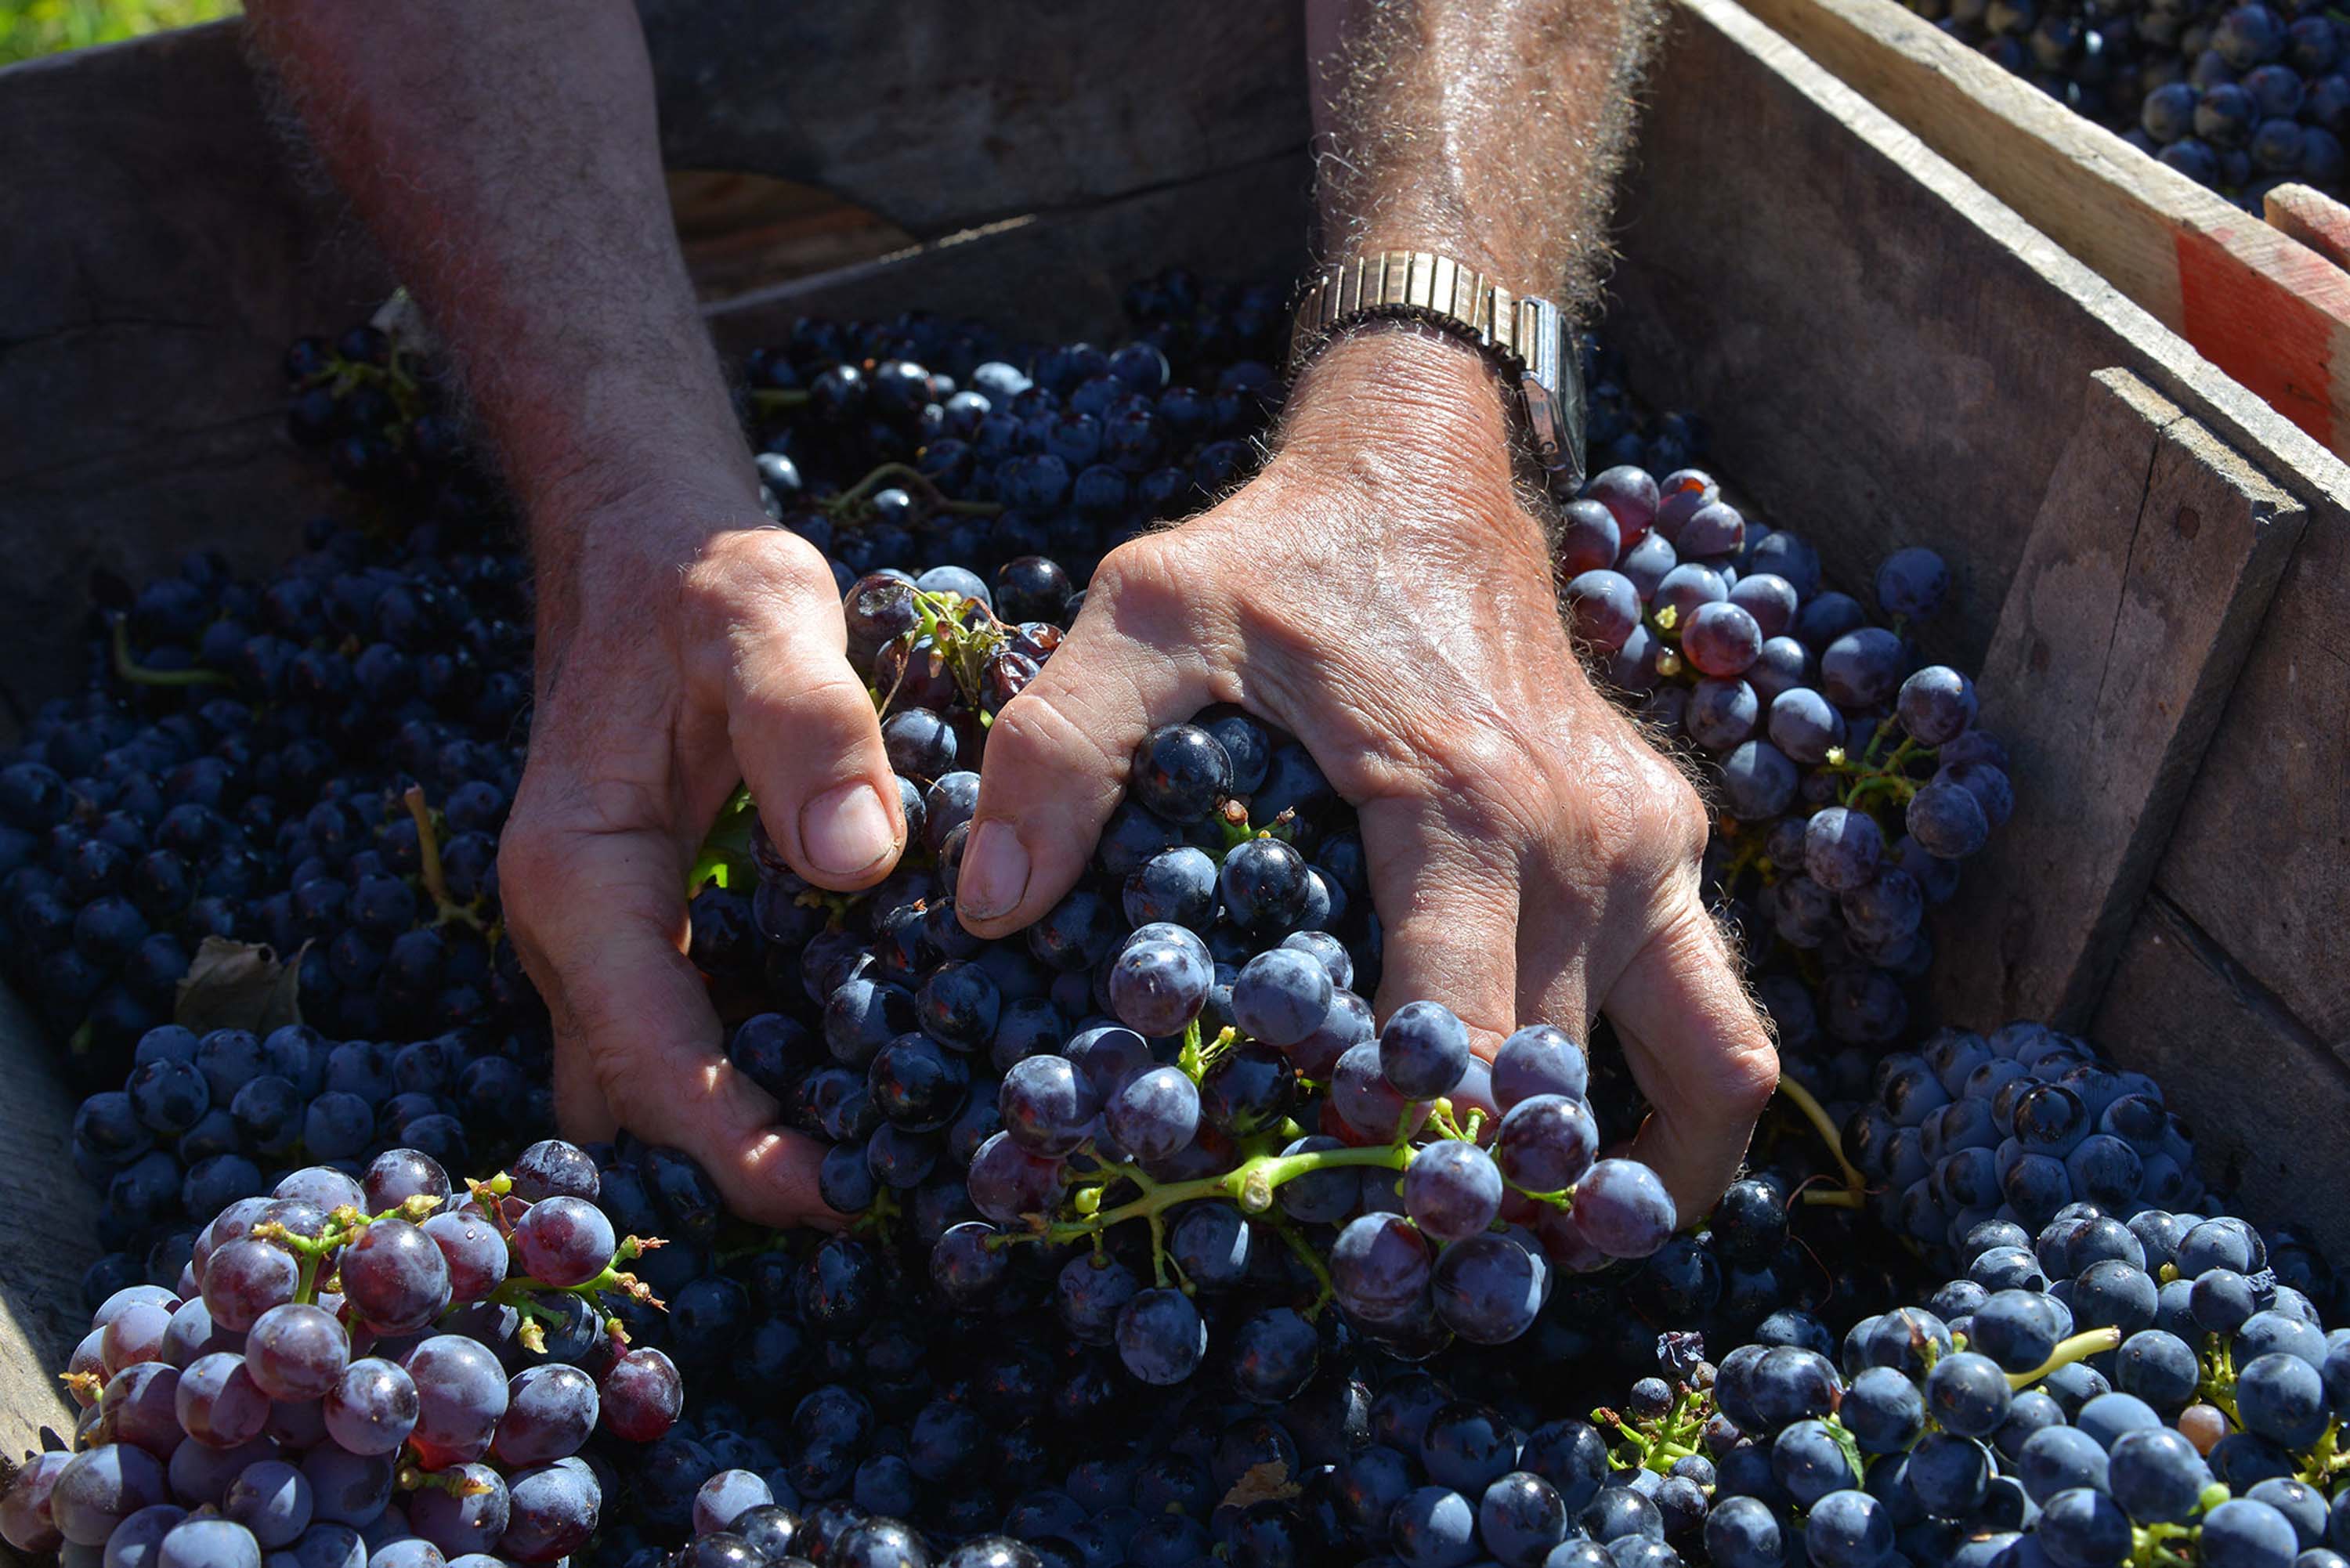  Schöne fruchtige Noten verbinden sich mit den würzigen Noten der Provence und ergeben schöne, komplexe Weine, die sowohl als Essensbegleiter als auch zum geselligen Miteinander passen.